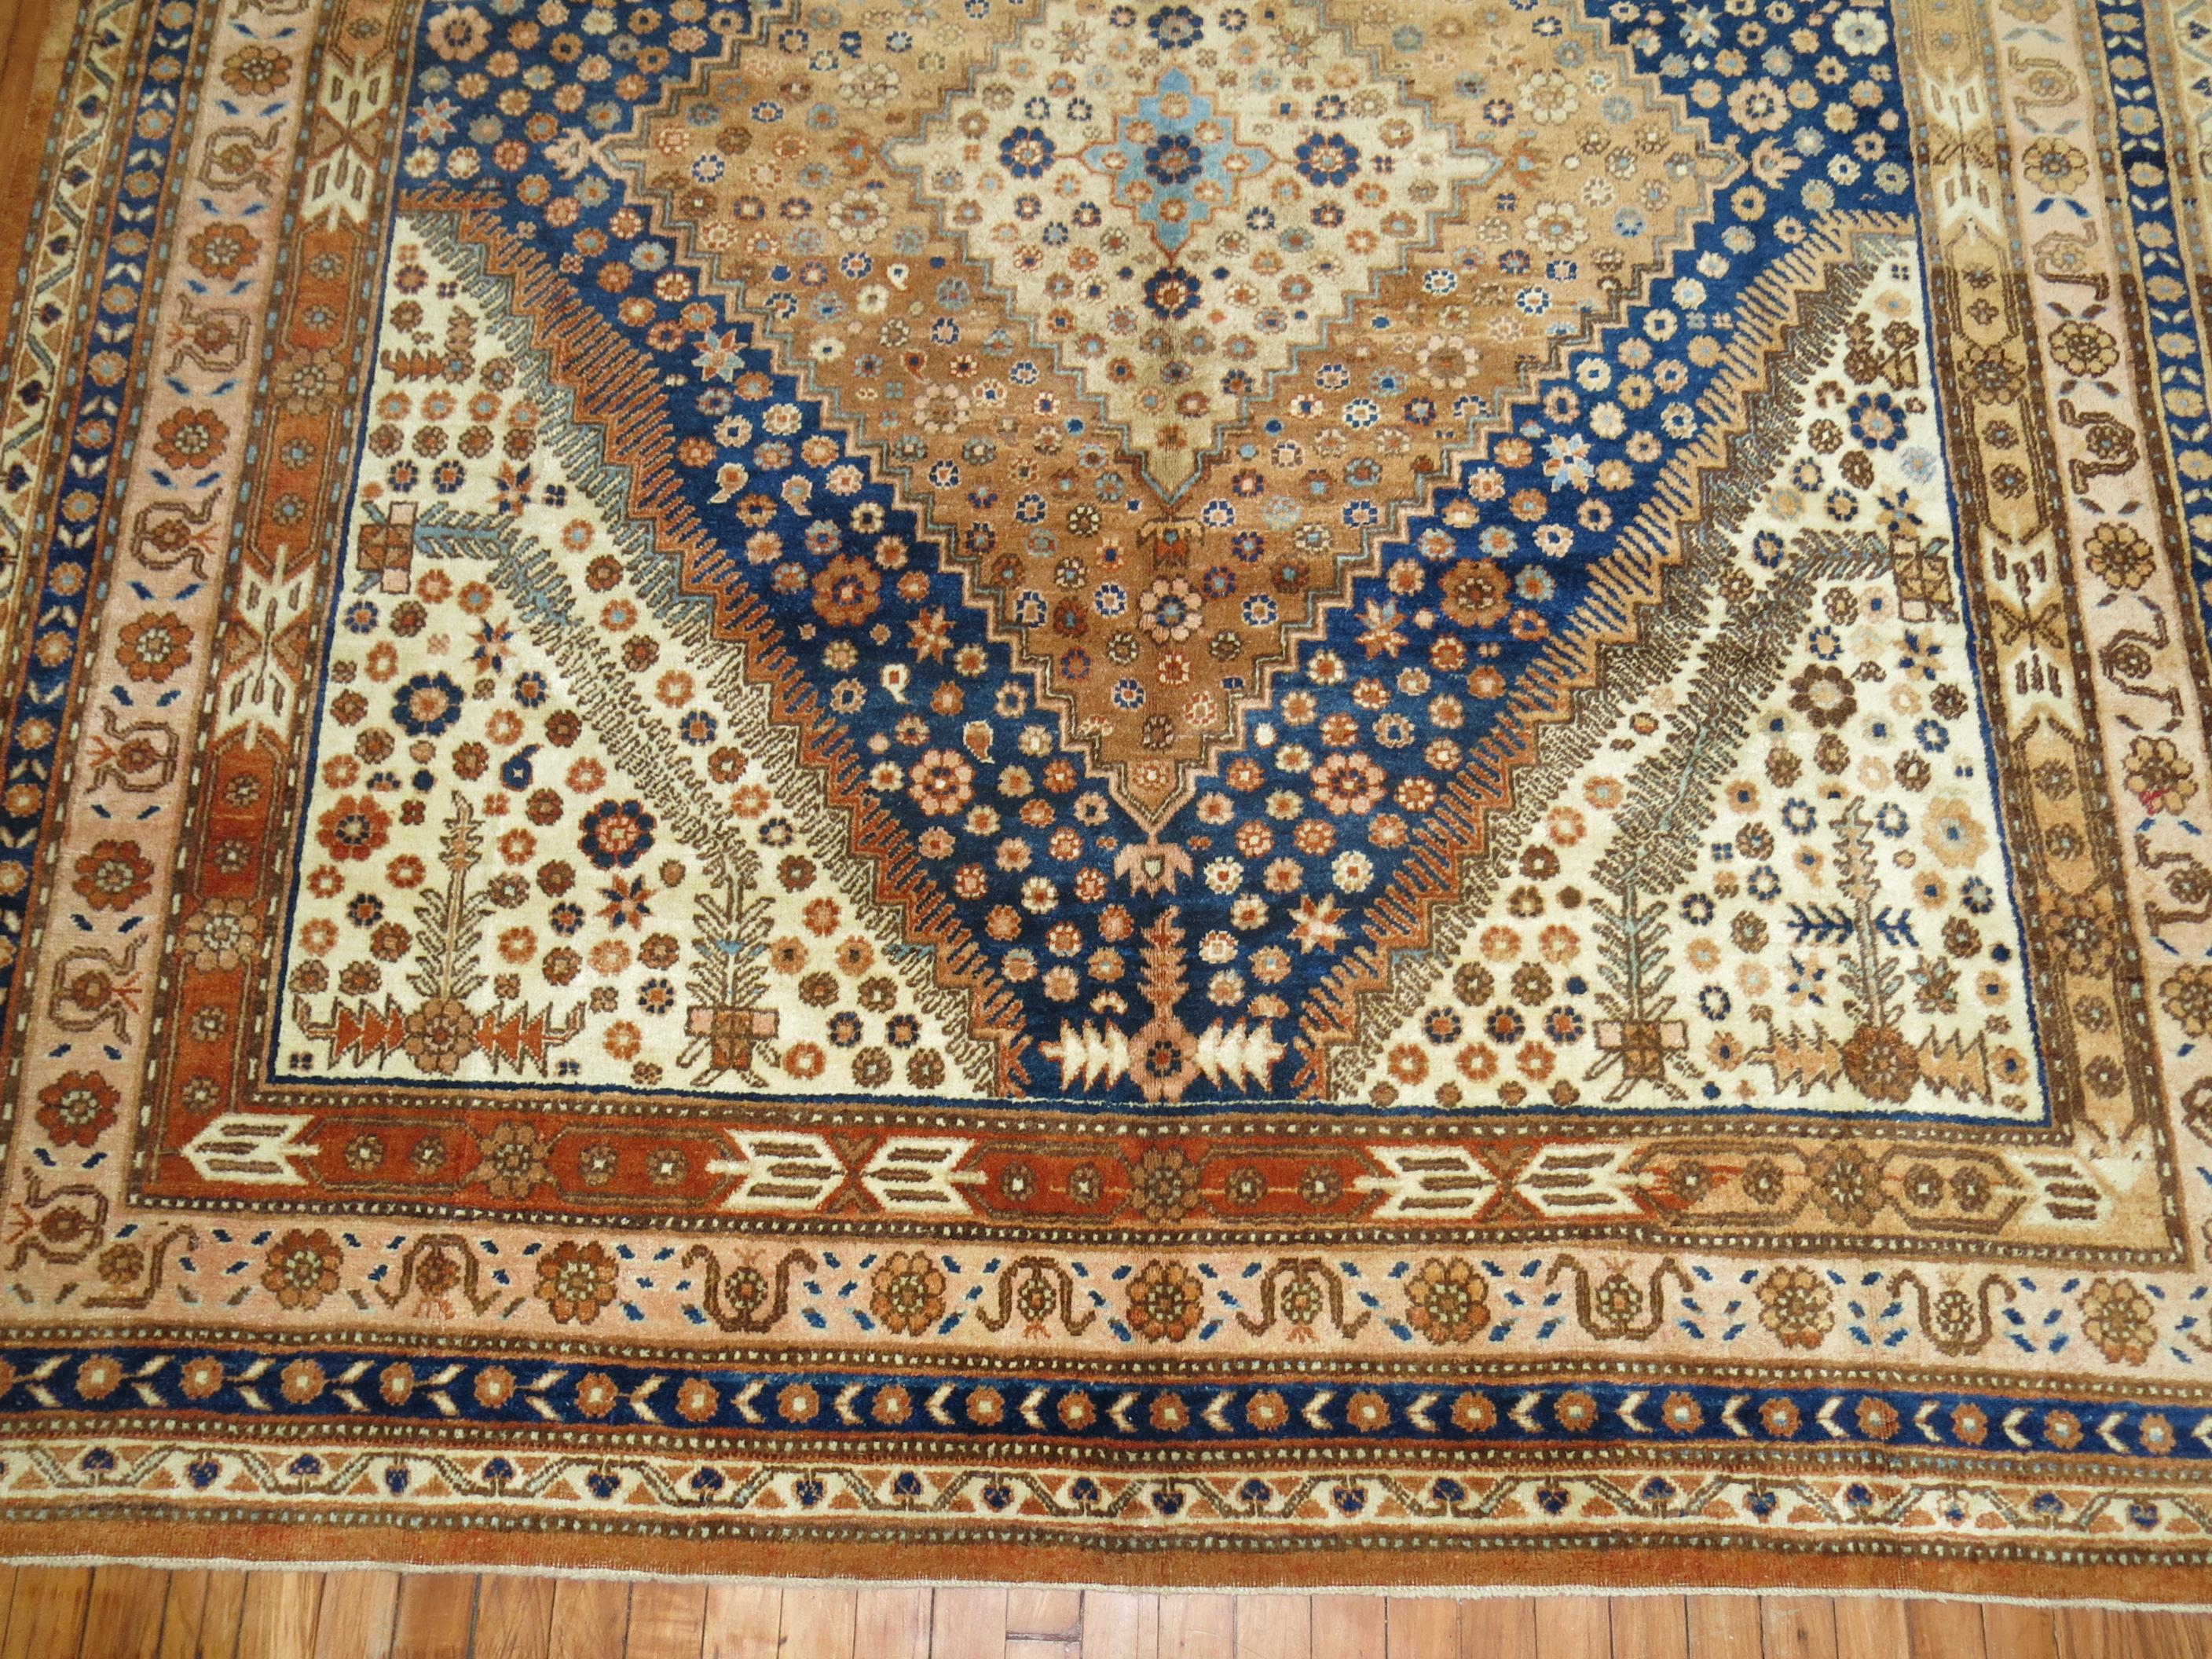 Großer Khotan-Teppich im Galerieformat aus der Mitte des Jahrhunderts mit einem geometrischen Muster in tiefem Blau, gebranntem Orange und apricotfarbenen Akzenten

Maße: 7'2'' x 14'